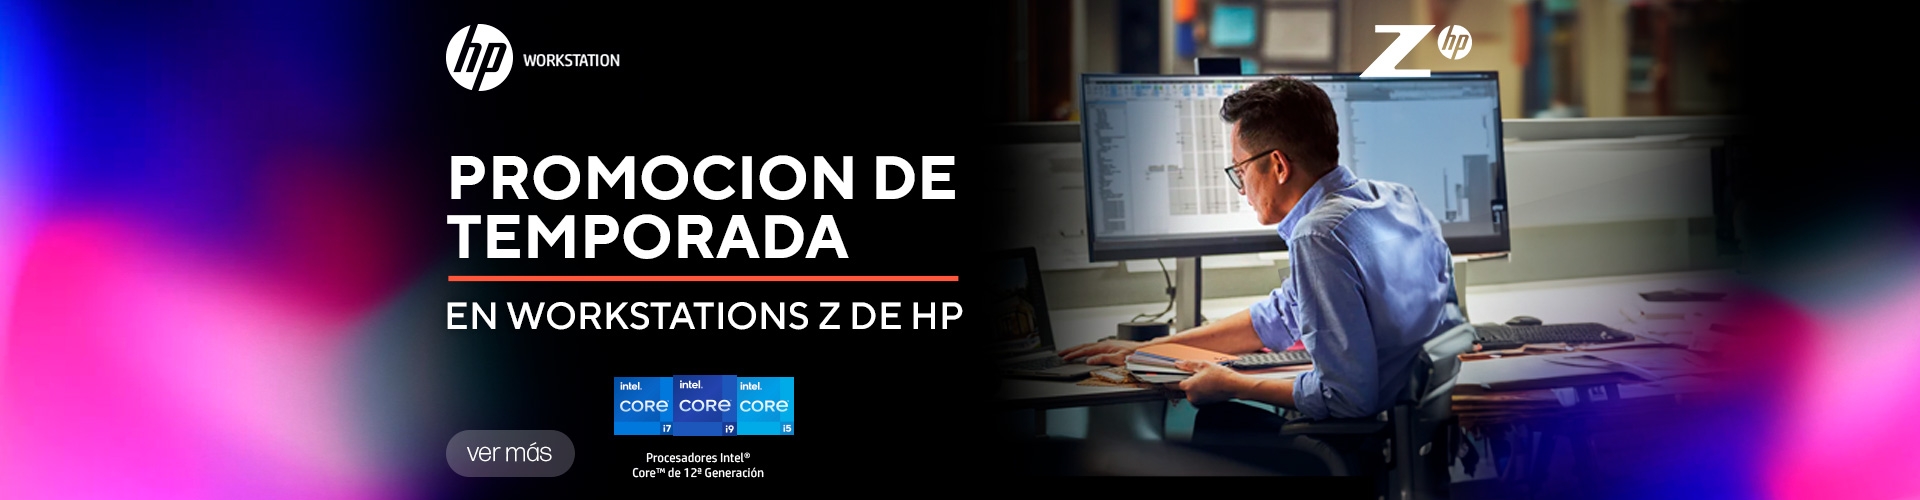 Promoción de temporada en Workstation Z de HP